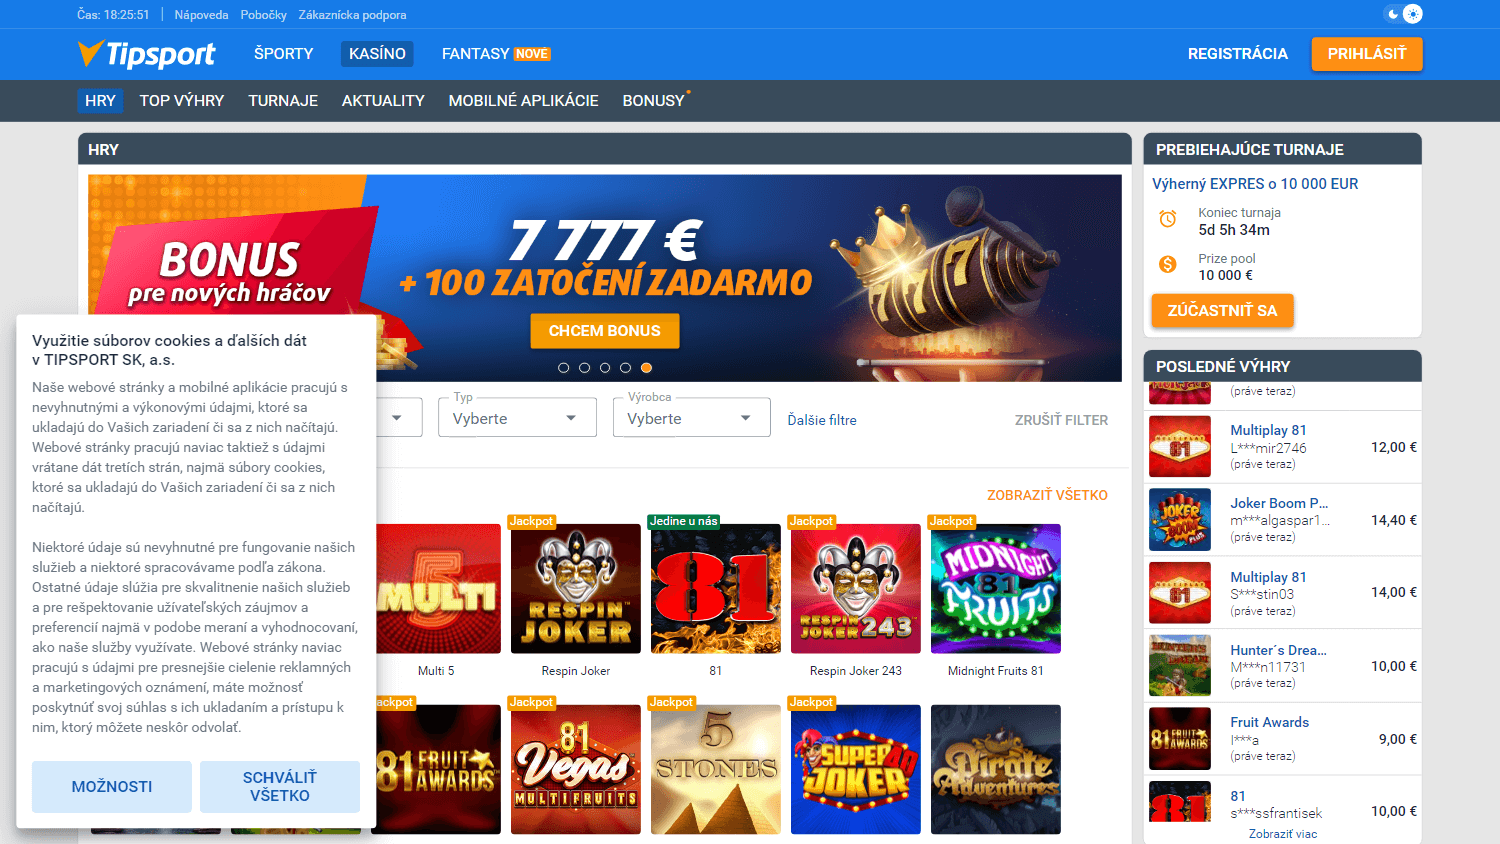 tipsport_casino_sk_homepage_desktop